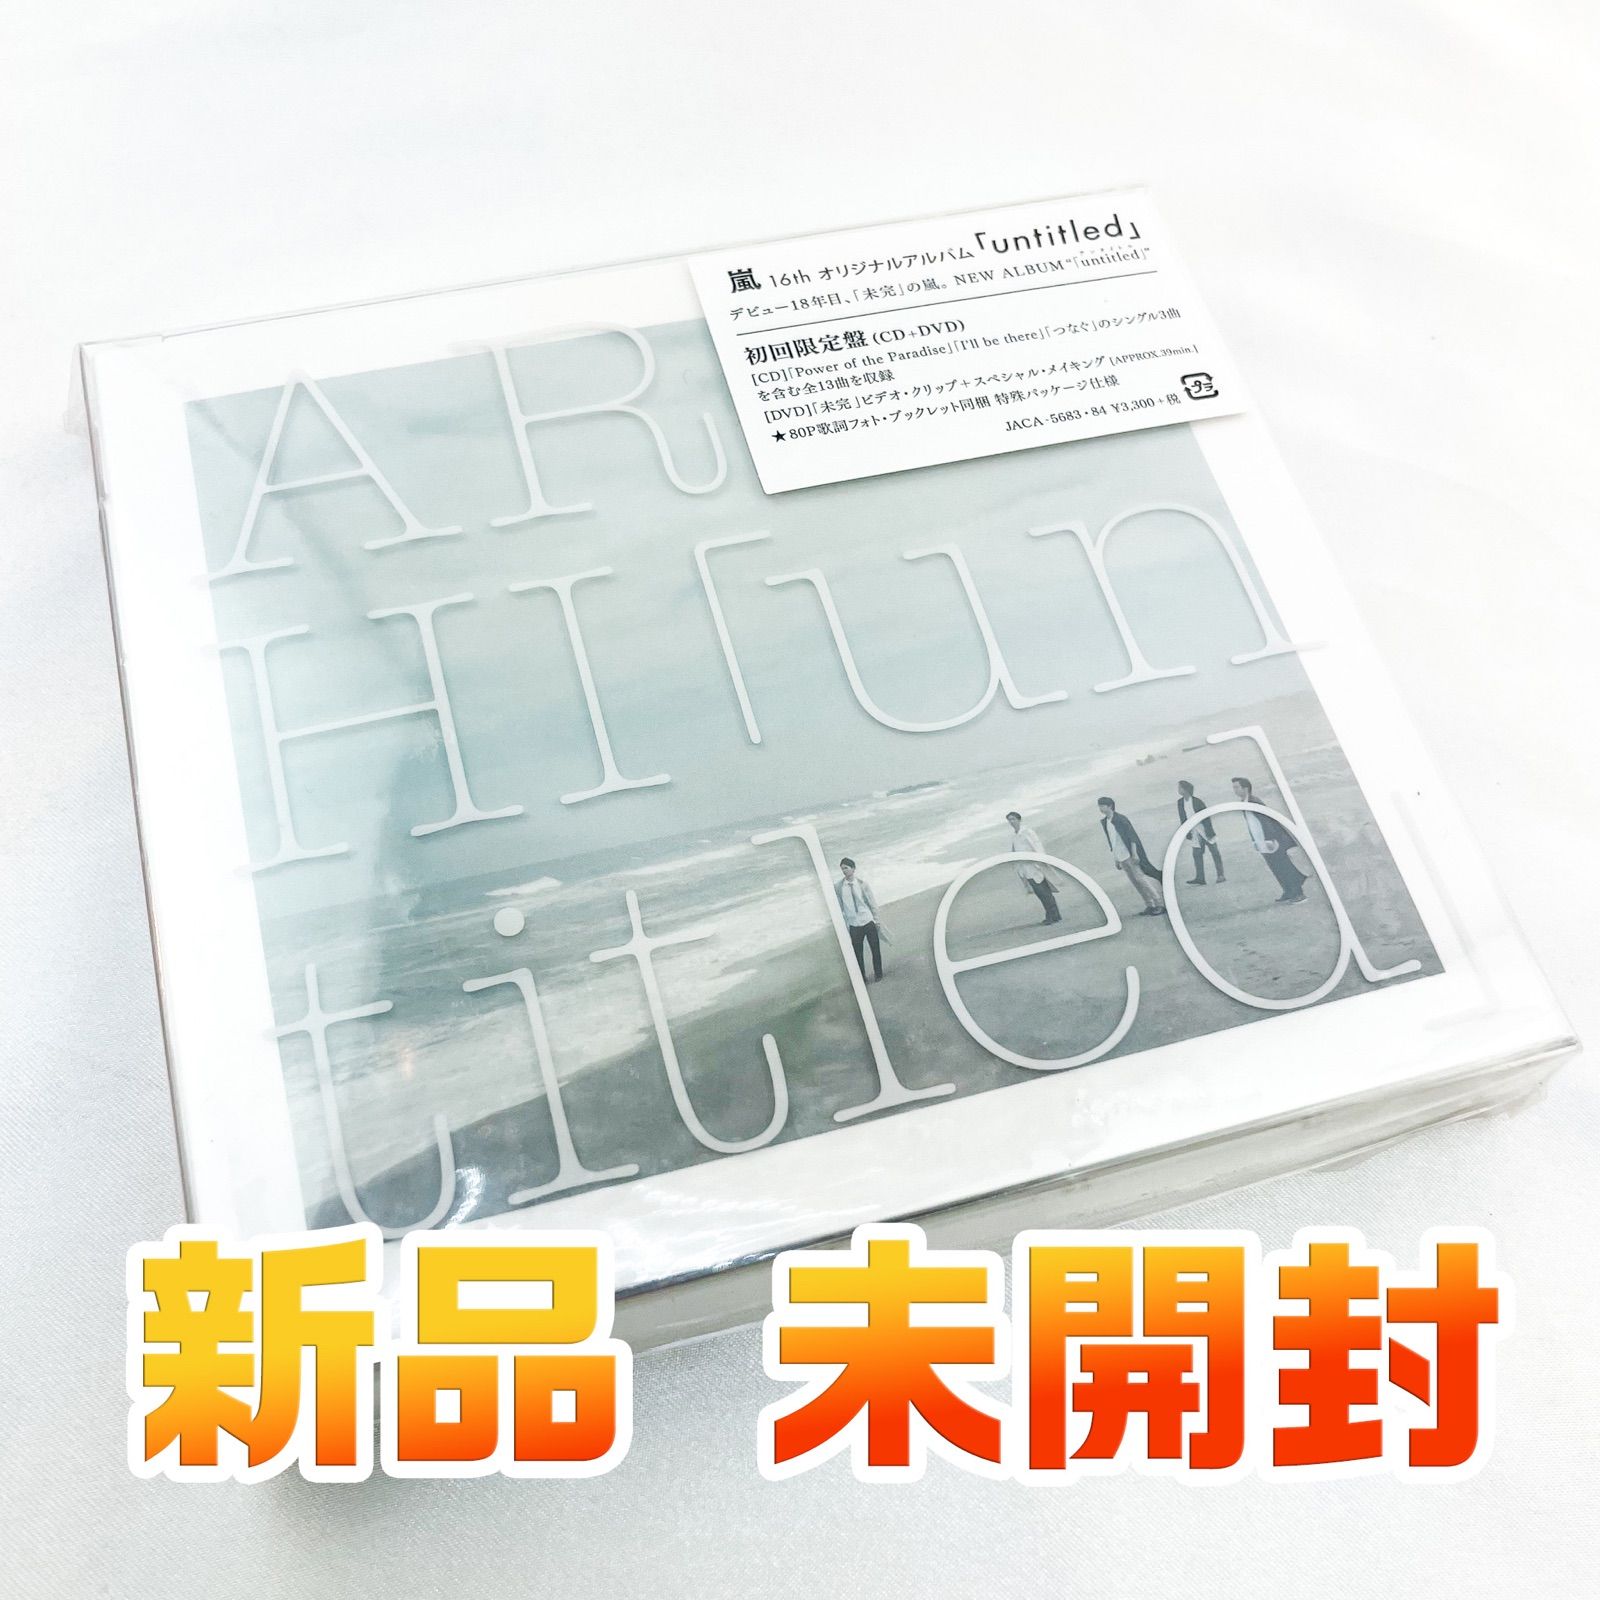 嵐 アルバム「unaltd」未開封 CD・DVD 初回限定版 - メルカリ